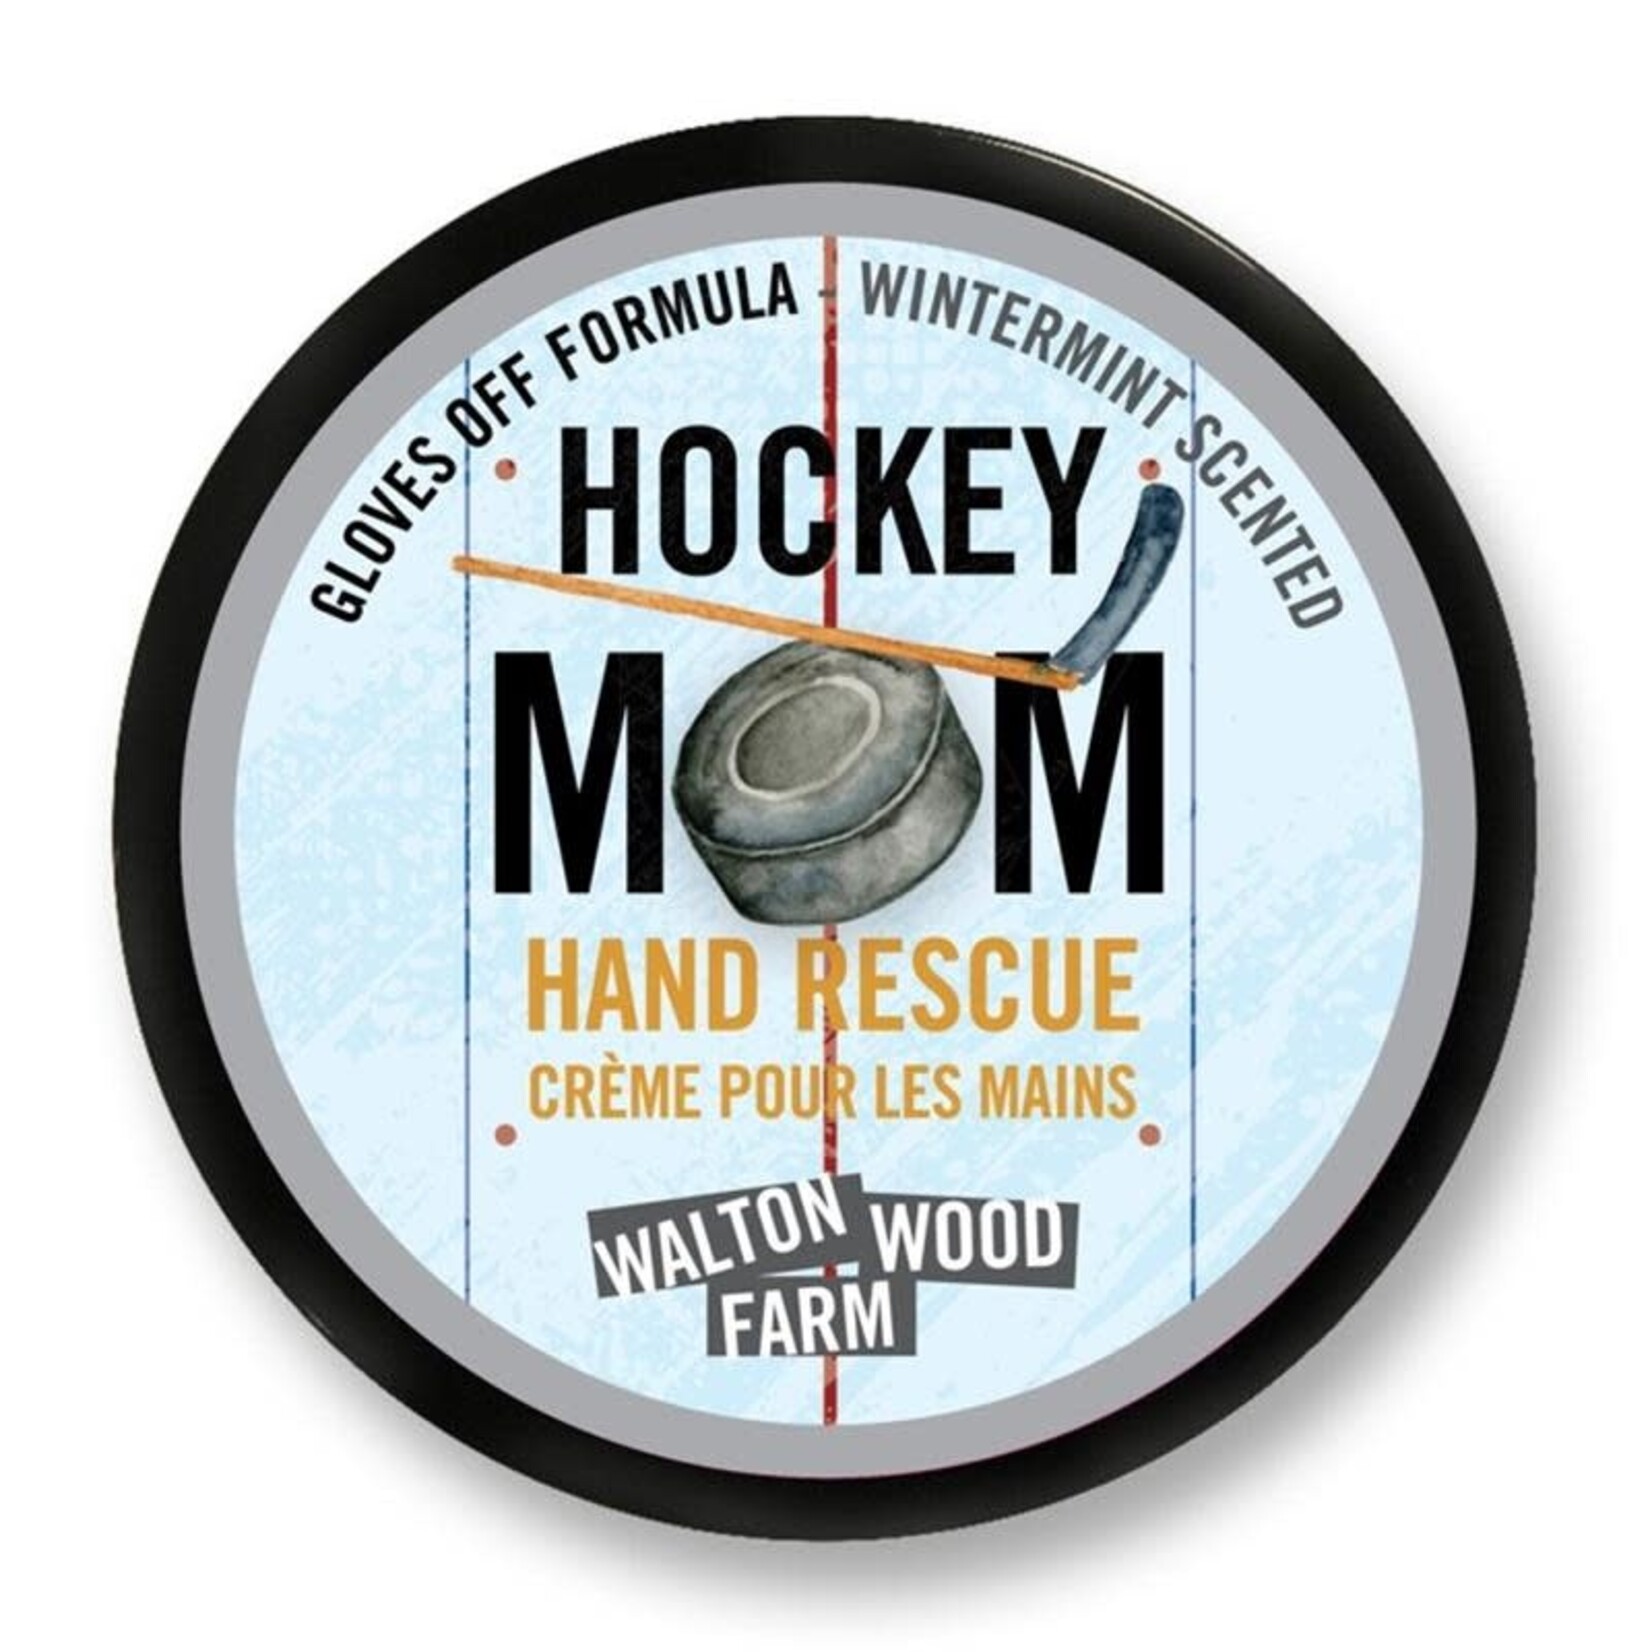 Walton Wood Farm HAND RESCUE - HOCKEY MOM